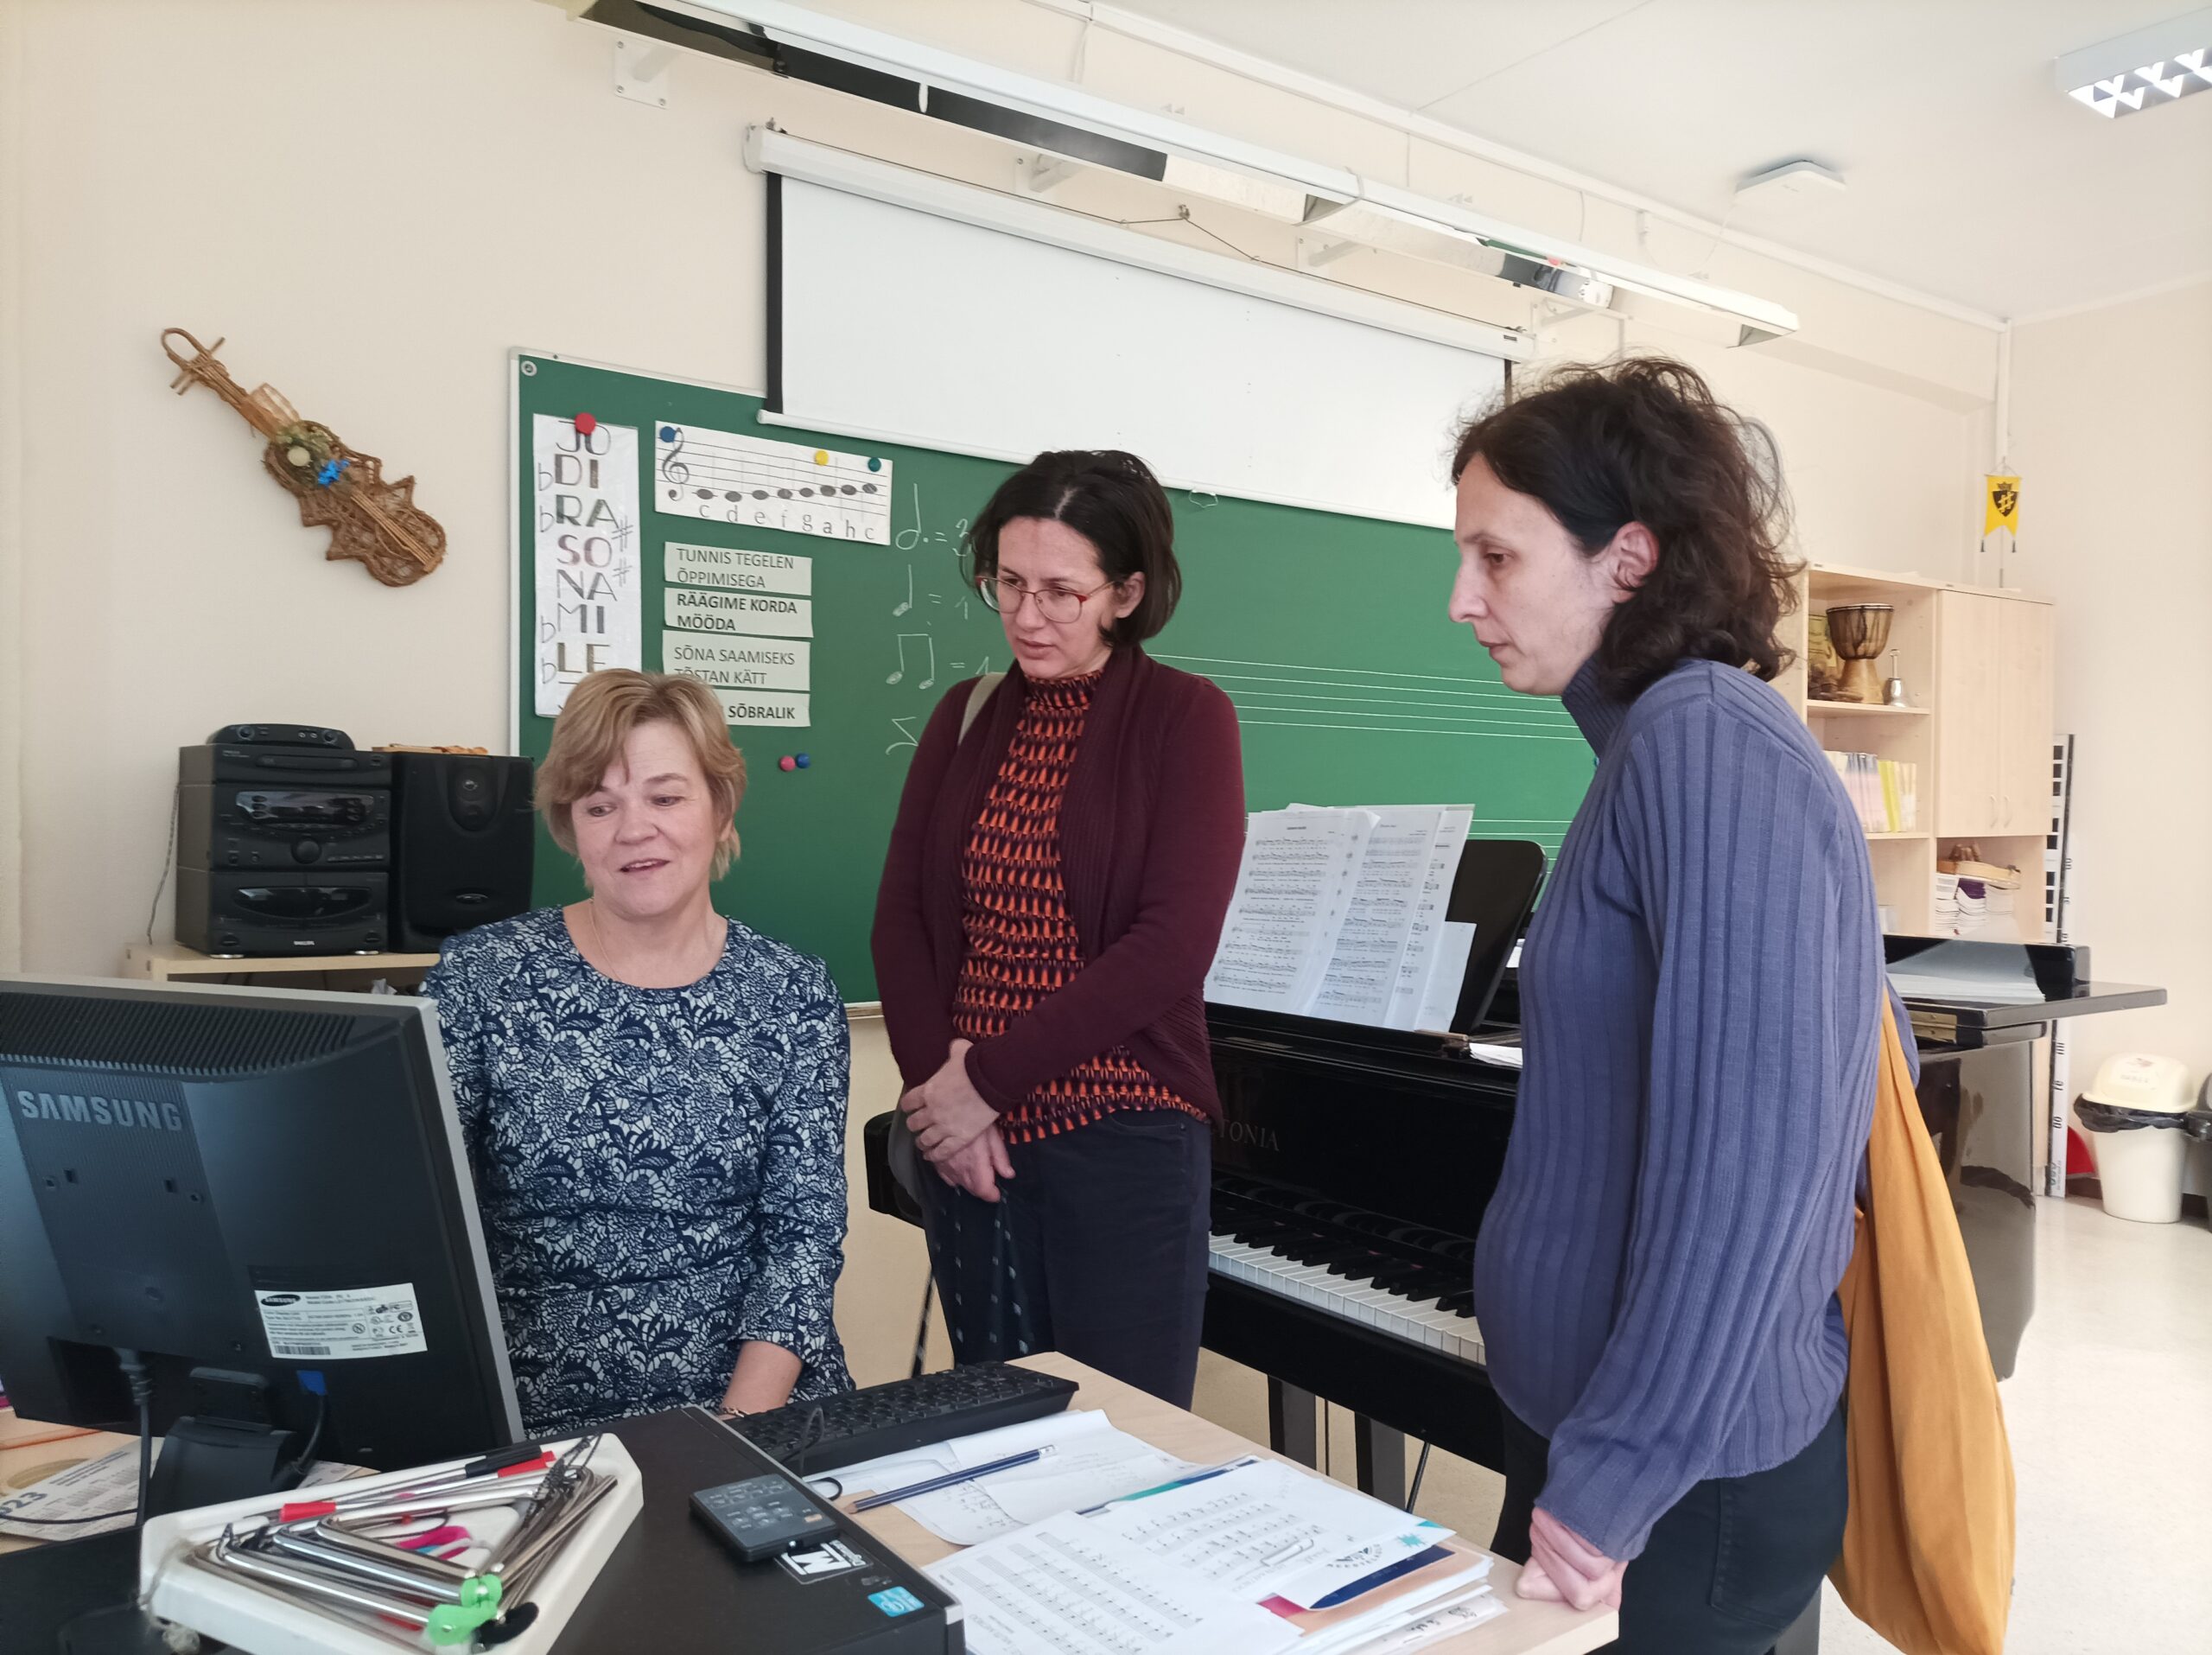 Muusikaõpetaja Meeli Nõmme tutvustas külalistele Stuu- diumit – veebikeskkonda, kus toimub infovahetus kooli, õpilase ja õpetaja vahel.